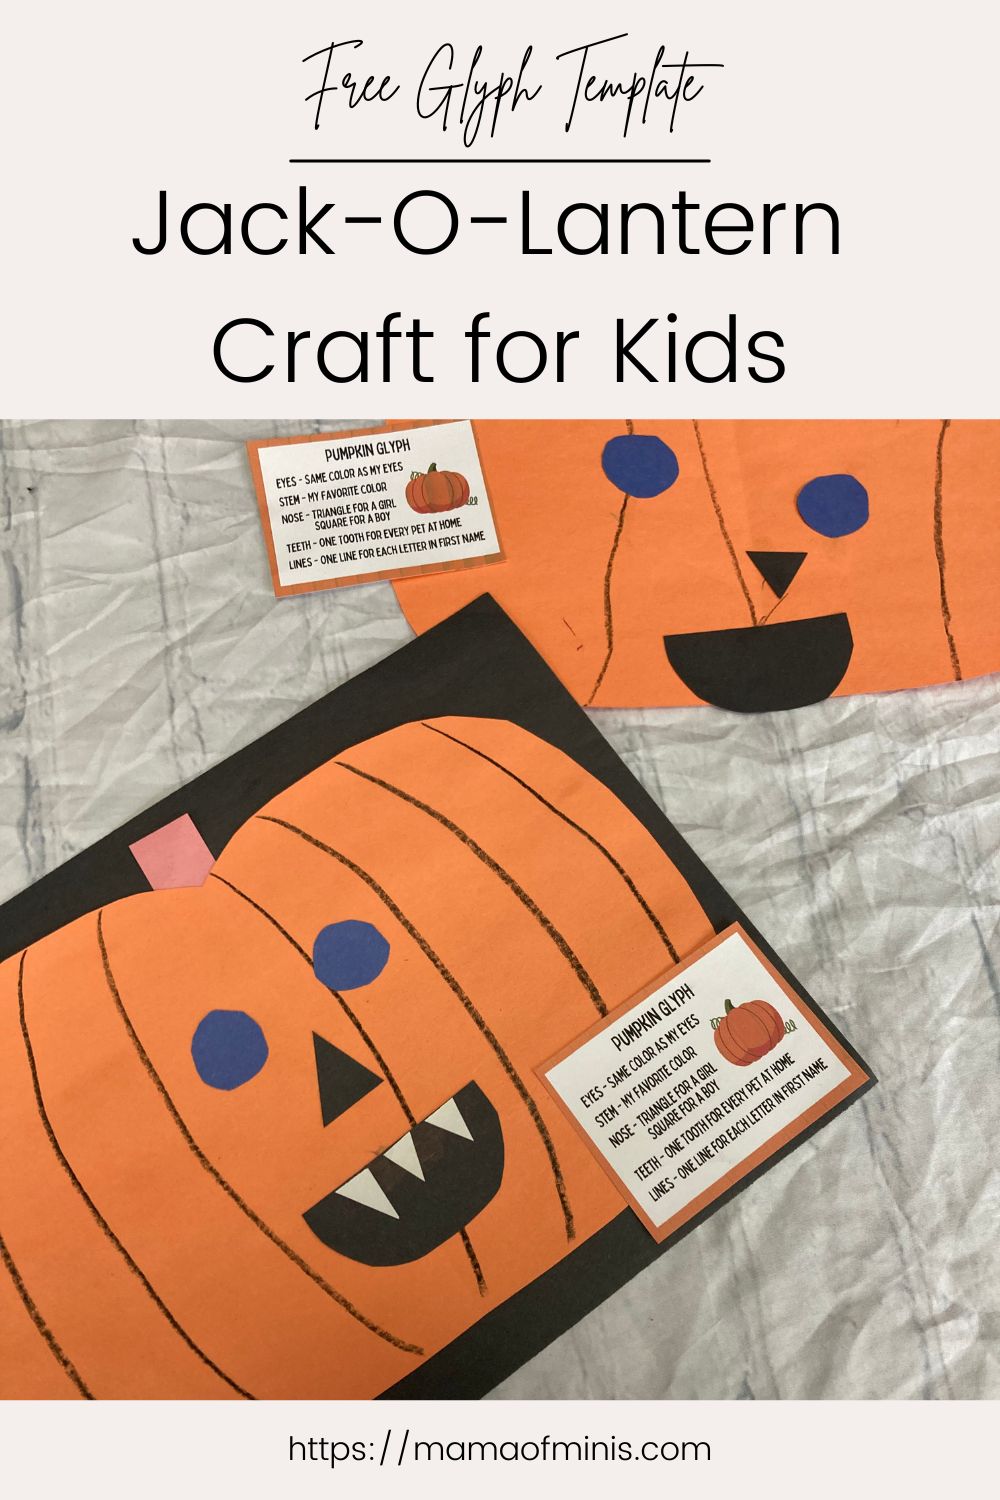 Jack-O-Lantern Craft for Kids